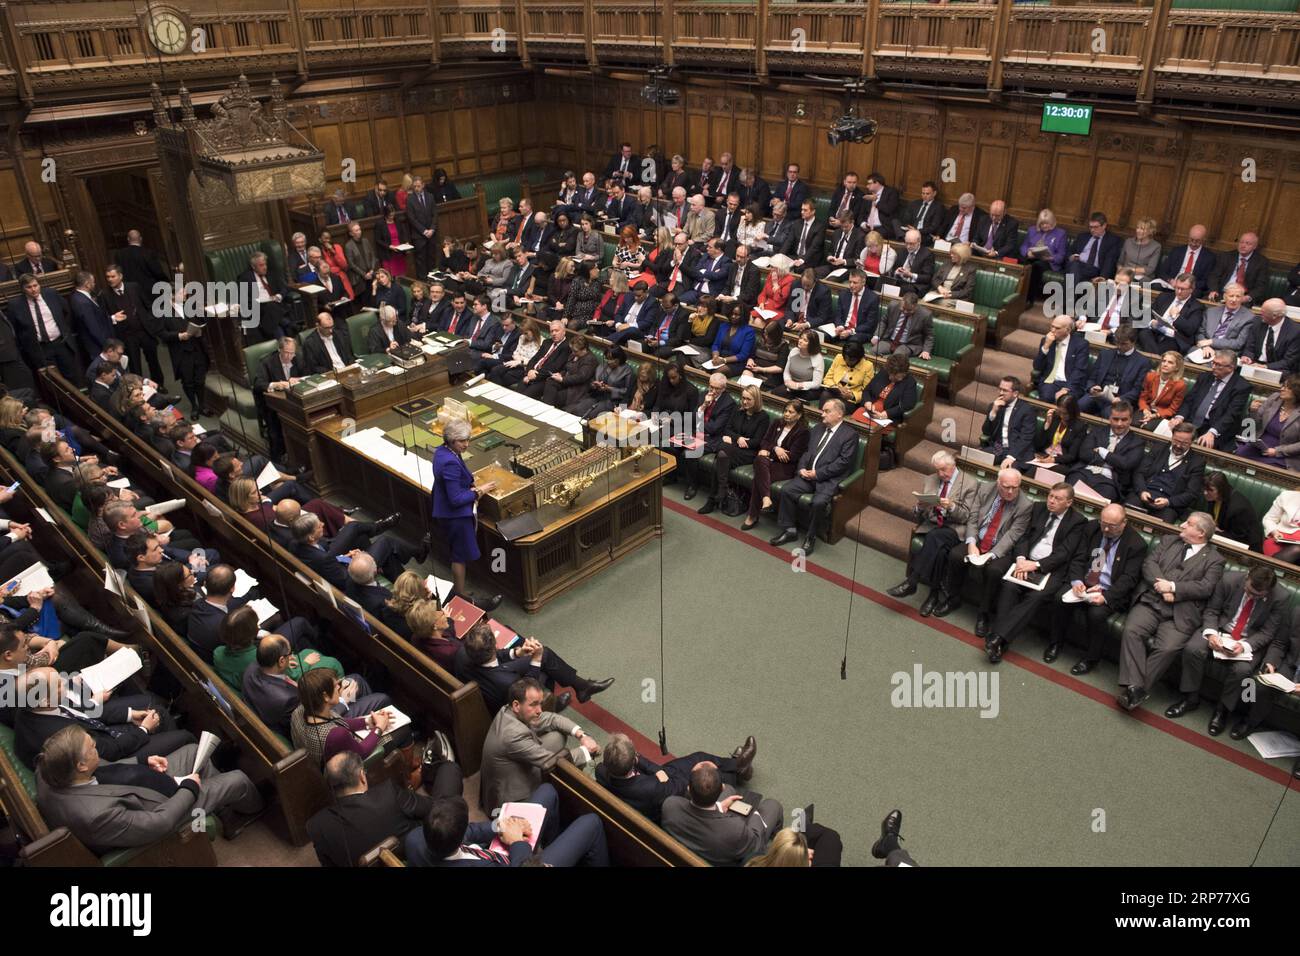 (190131) -- LONDRA, 31 gennaio 2019 (Xinhua) -- la foto scattata il 30 gennaio 2019 mostra una visione generale del primo ministro britannico Theresa May che partecipa alle domande del primo ministro alla camera dei comuni di Londra, in Gran Bretagna. Molte opzioni per la Brexit rimangono ancora una possibilità dopo che Theresa May ha ottenuto il sostegno della camera dei comuni per rinegoziare il suo accordo di recesso dell'Unione europea. (Xinhua/British Parliament/Mark Duffy) BRITAIN-LONDON-THERESA MAY-BREXIT DEAL-PM TEMPO DELLE INTERROGAZIONI PUBLICATIONxNOTxINxCHN Foto Stock